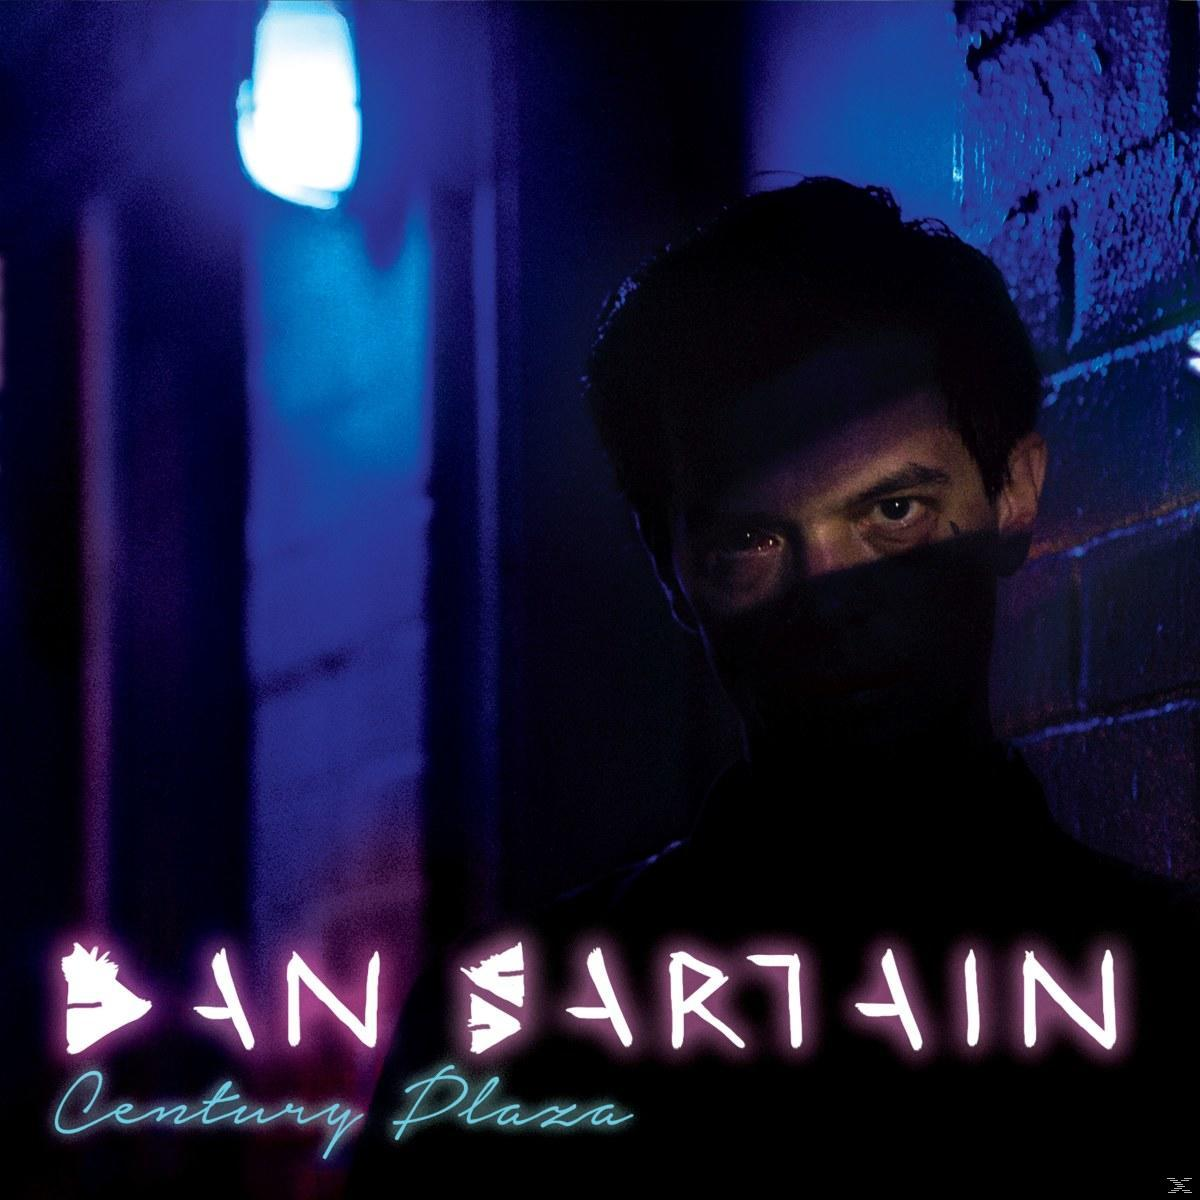 Dan Sartain - Plaza Century - (Vinyl)